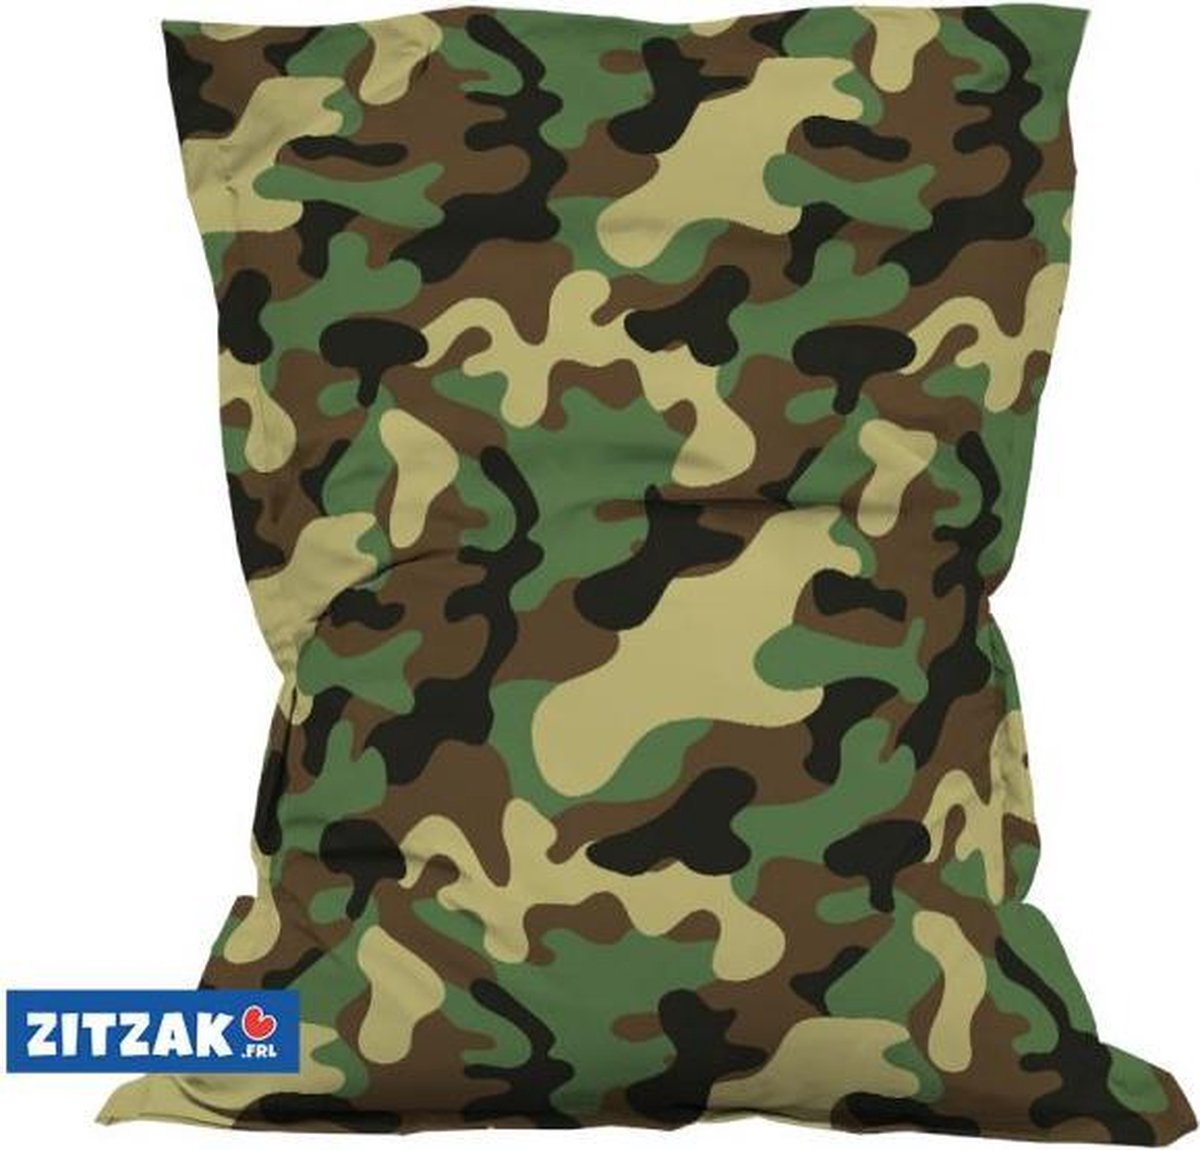 Zitzak Buiten Camo 135x175cm - XXL Outdoor Zitzak Camouflage Print | bol.com